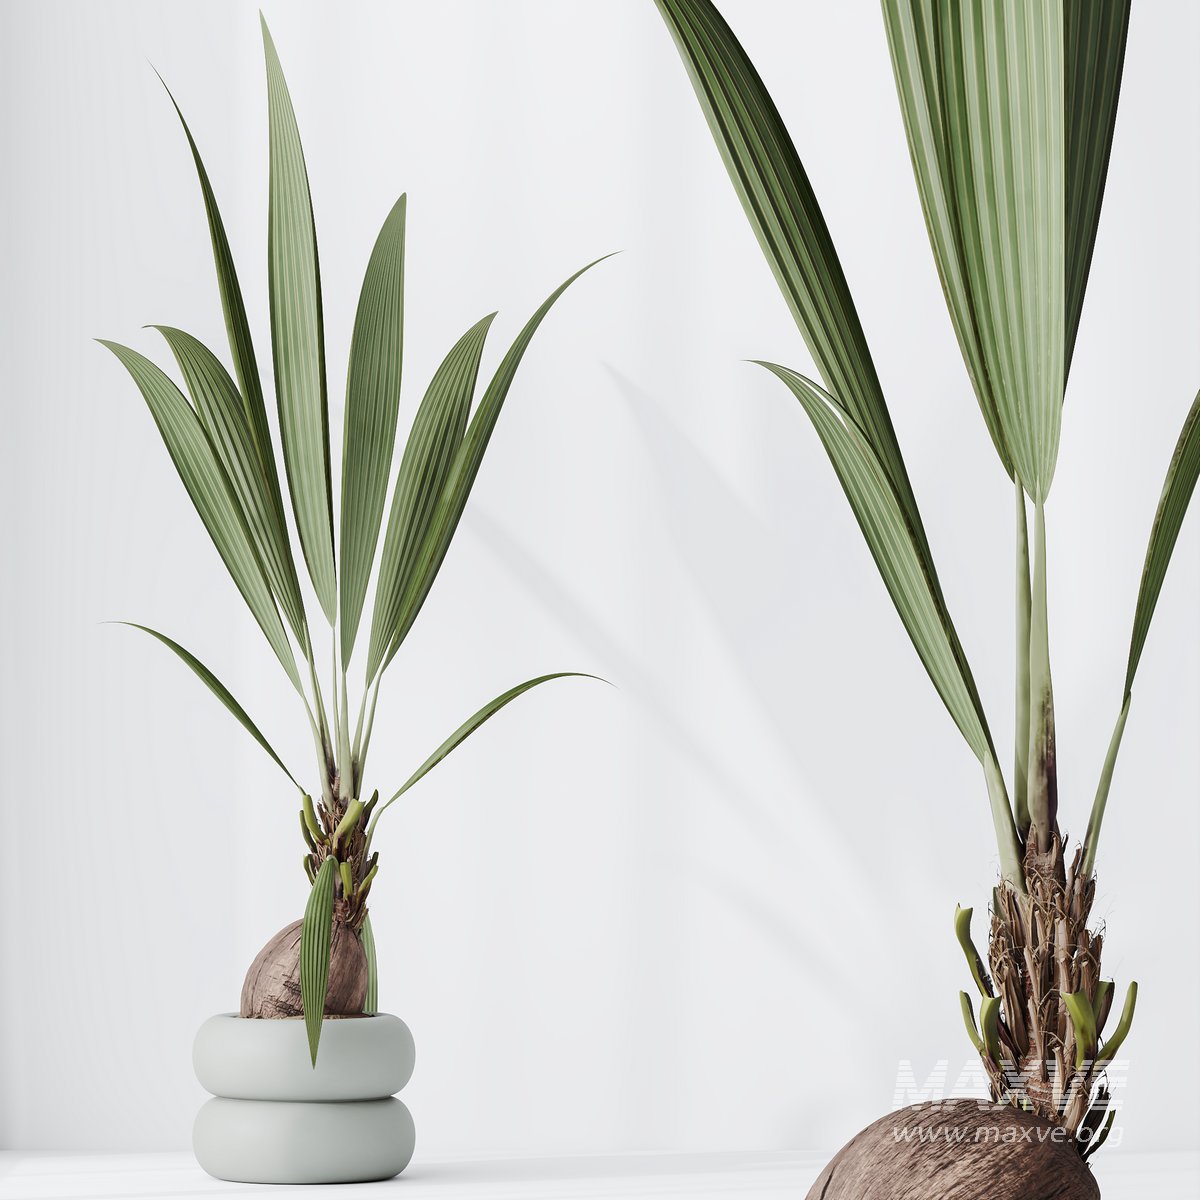 HousePlants Genus Cocos nucifera Coconut Palm - Maxve: Your 3D Model ...